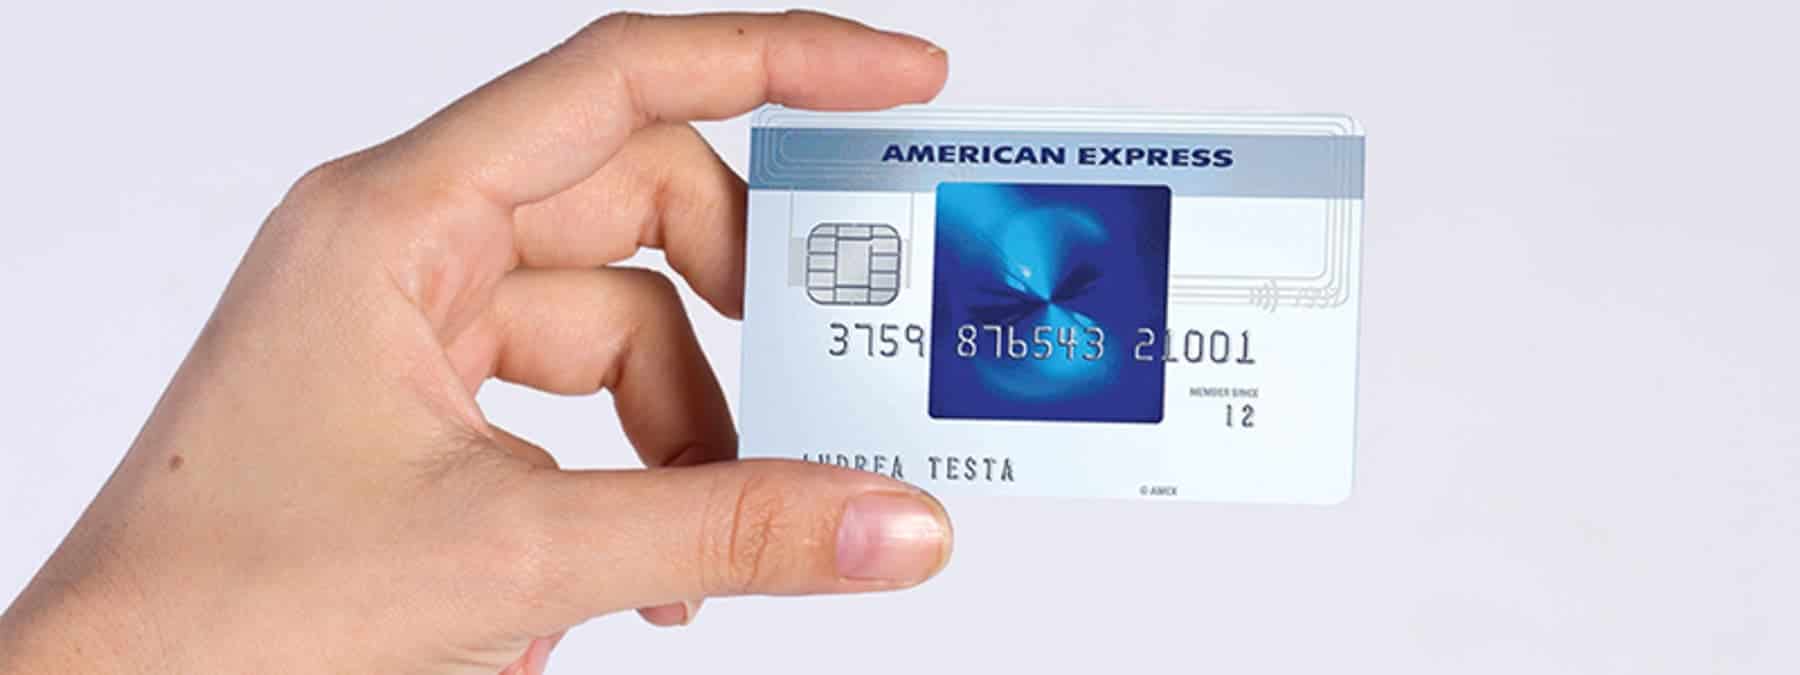 Blu American Express come funziona?